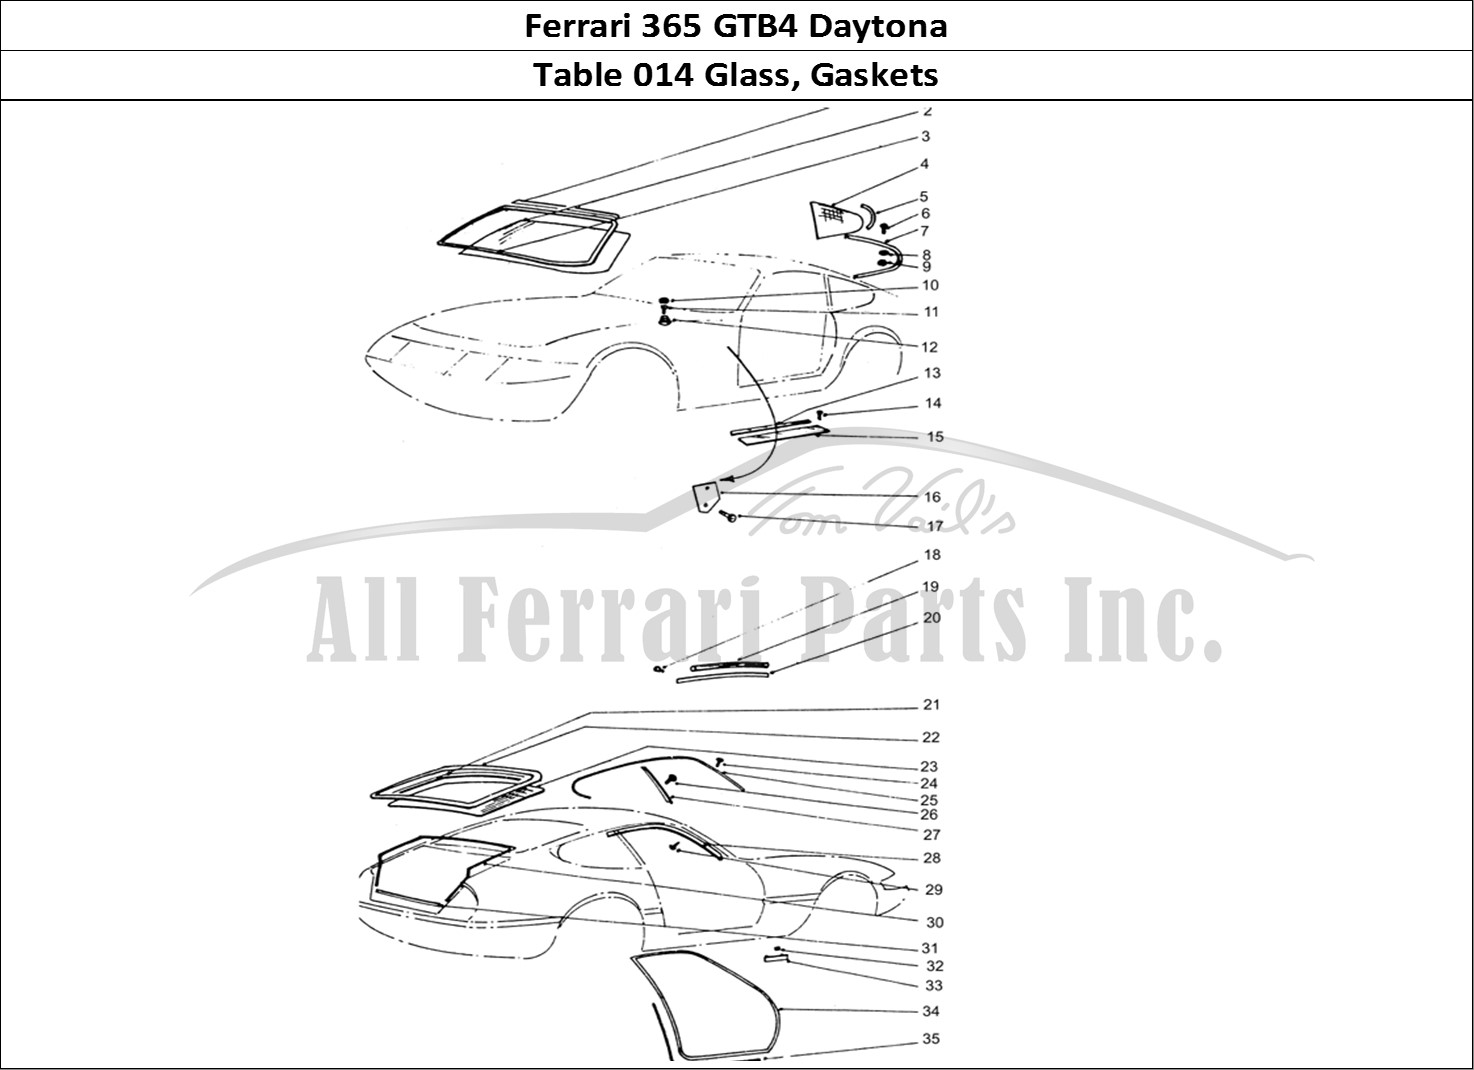 Ferrari Parts Ferrari 365 GTB4 Daytona (Coachwork) Page 014 Glass & Rubber seals